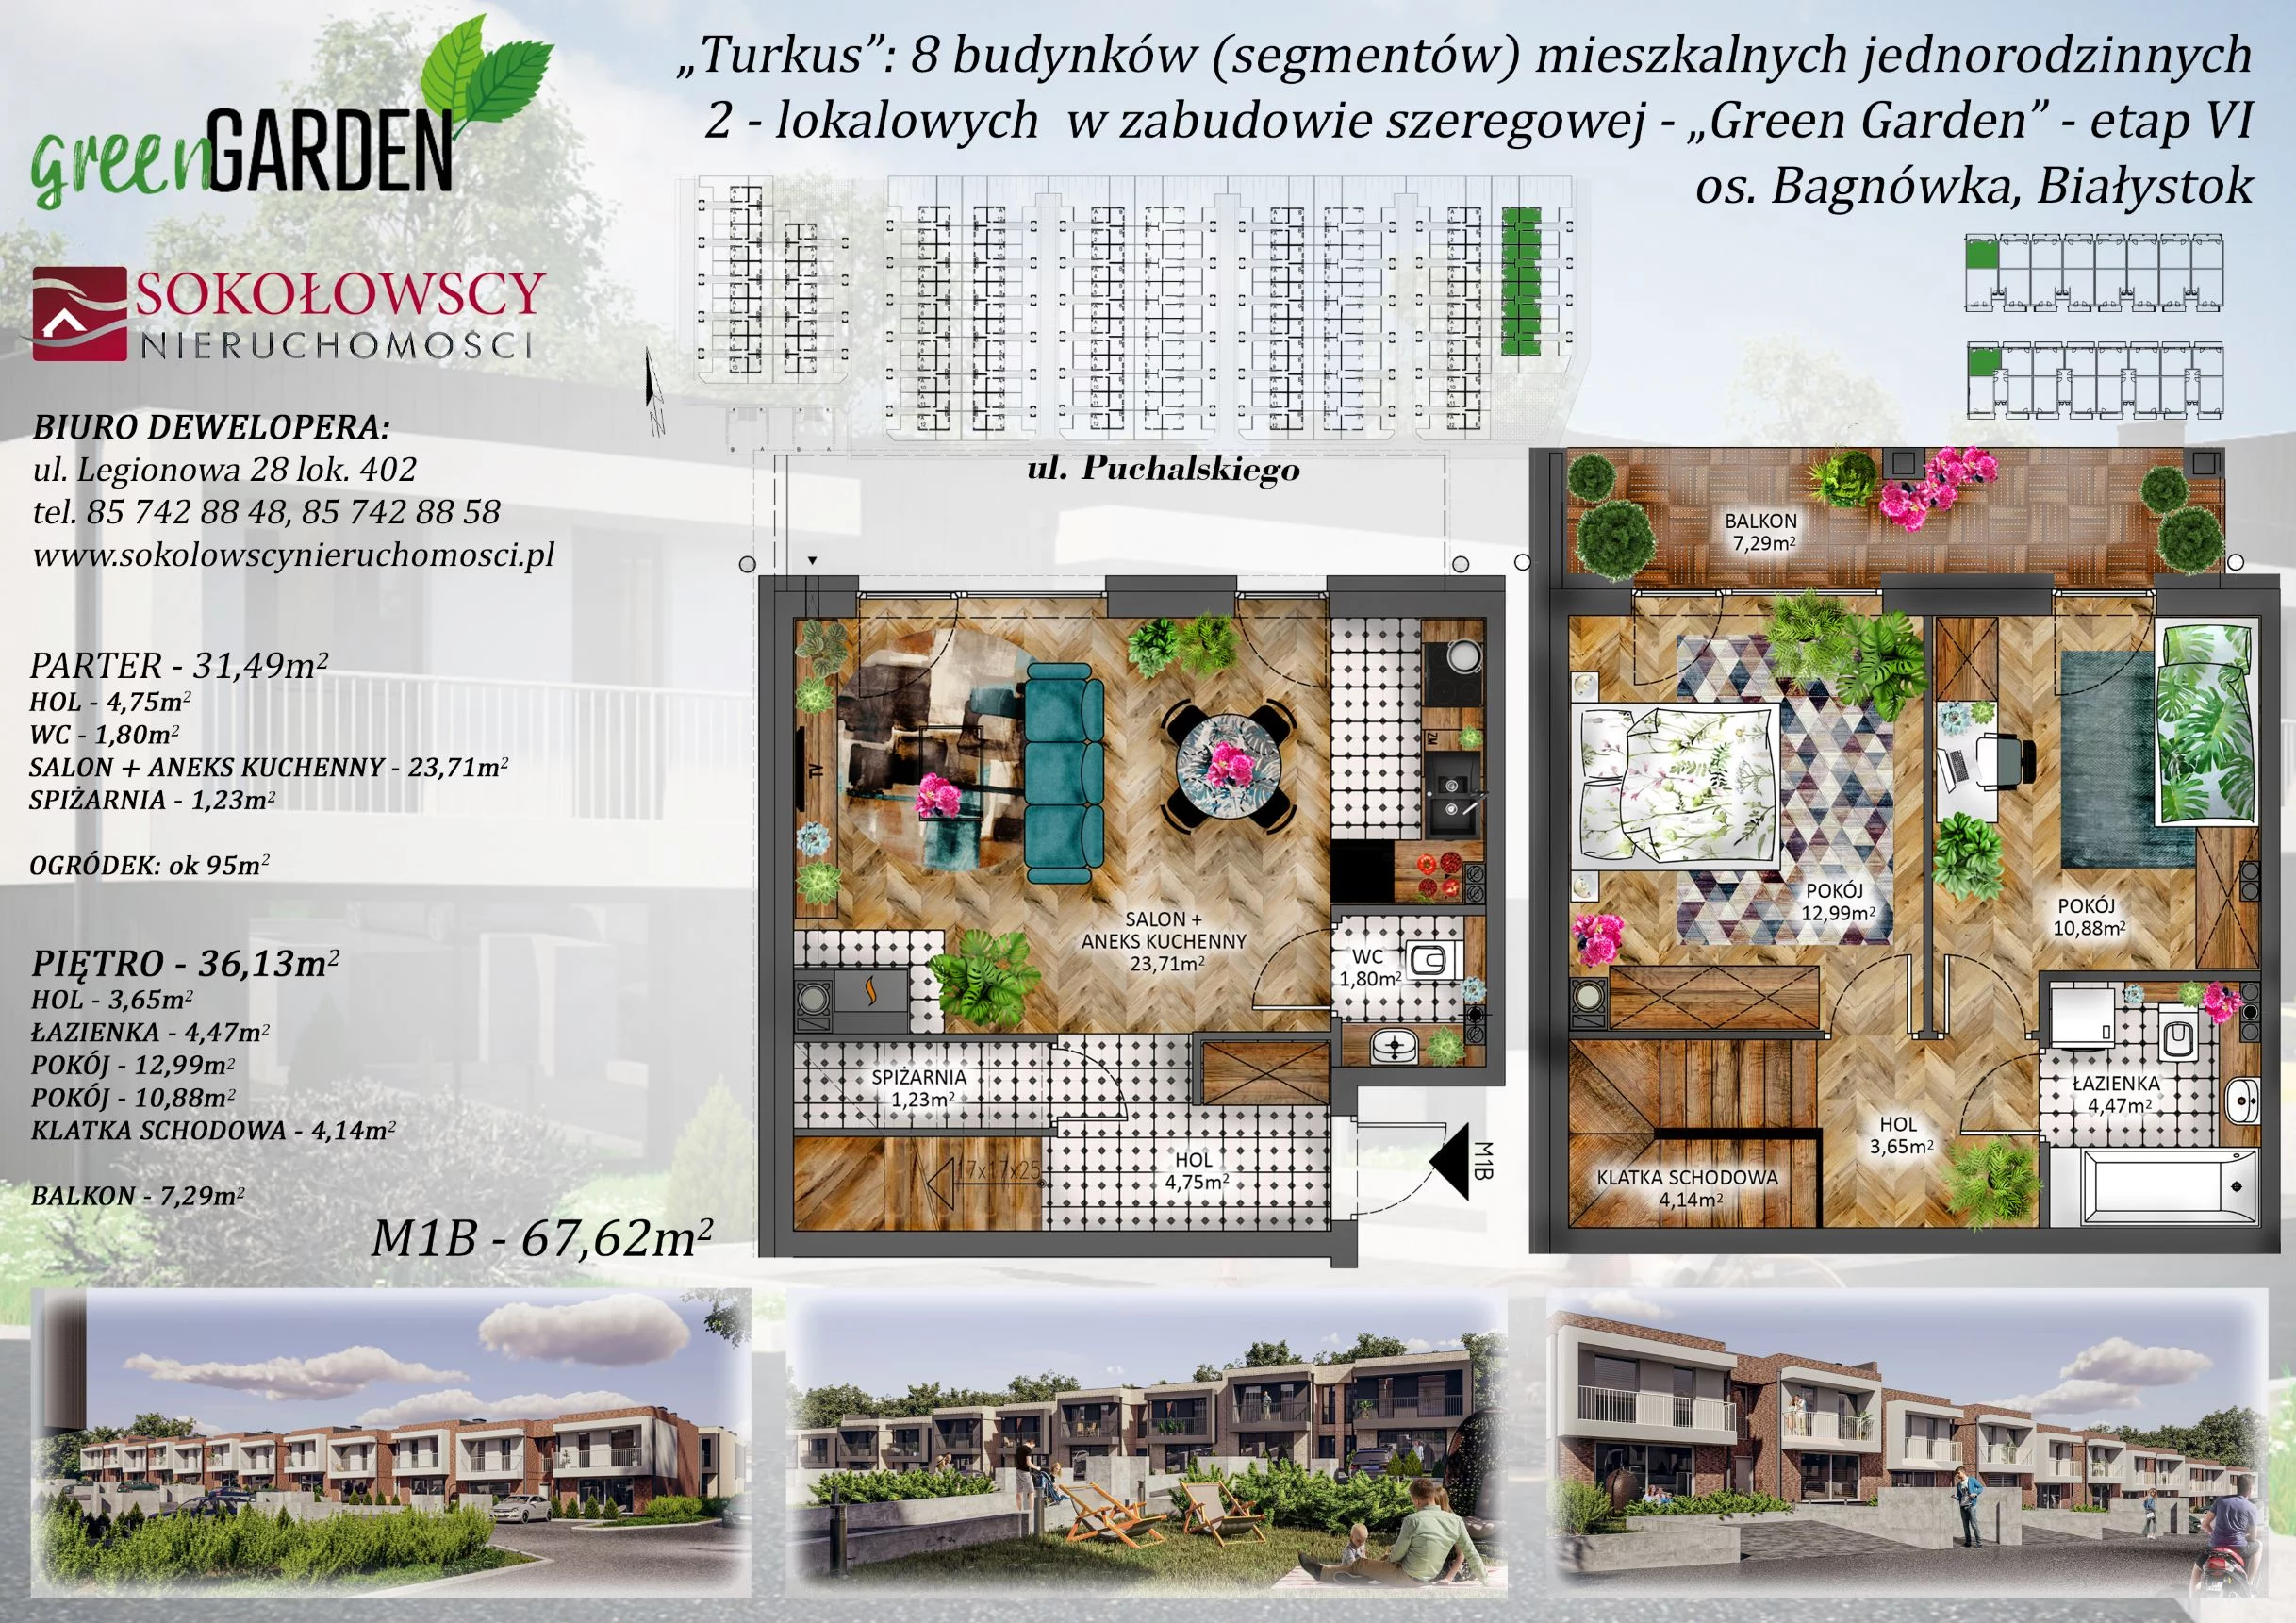 Mieszkanie 67,62 m², parter, oferta nr 1B, Green Garden etap 6, Białystok, Bagnówka, ul. Karola Puchalskiego